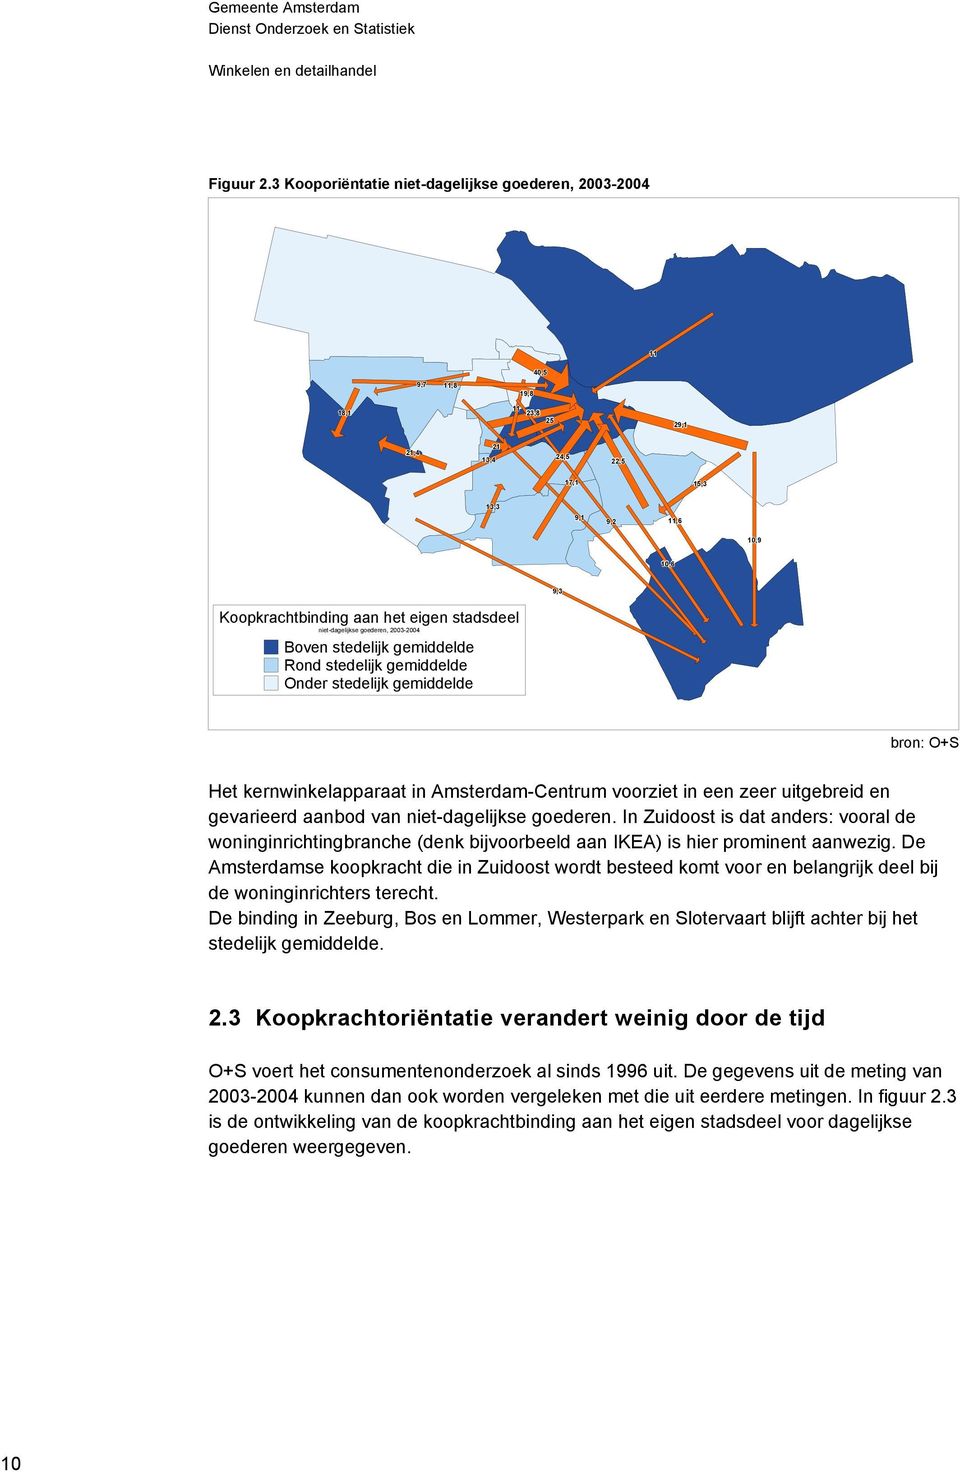 stadsdeel niet-dagelijkse goederen, 2003-2004 Boven stedelijk gemiddelde Rond stedelijk gemiddelde Onder stedelijk gemiddelde Het kernwinkelapparaat in Amsterdam-Centrum voorziet in een zeer